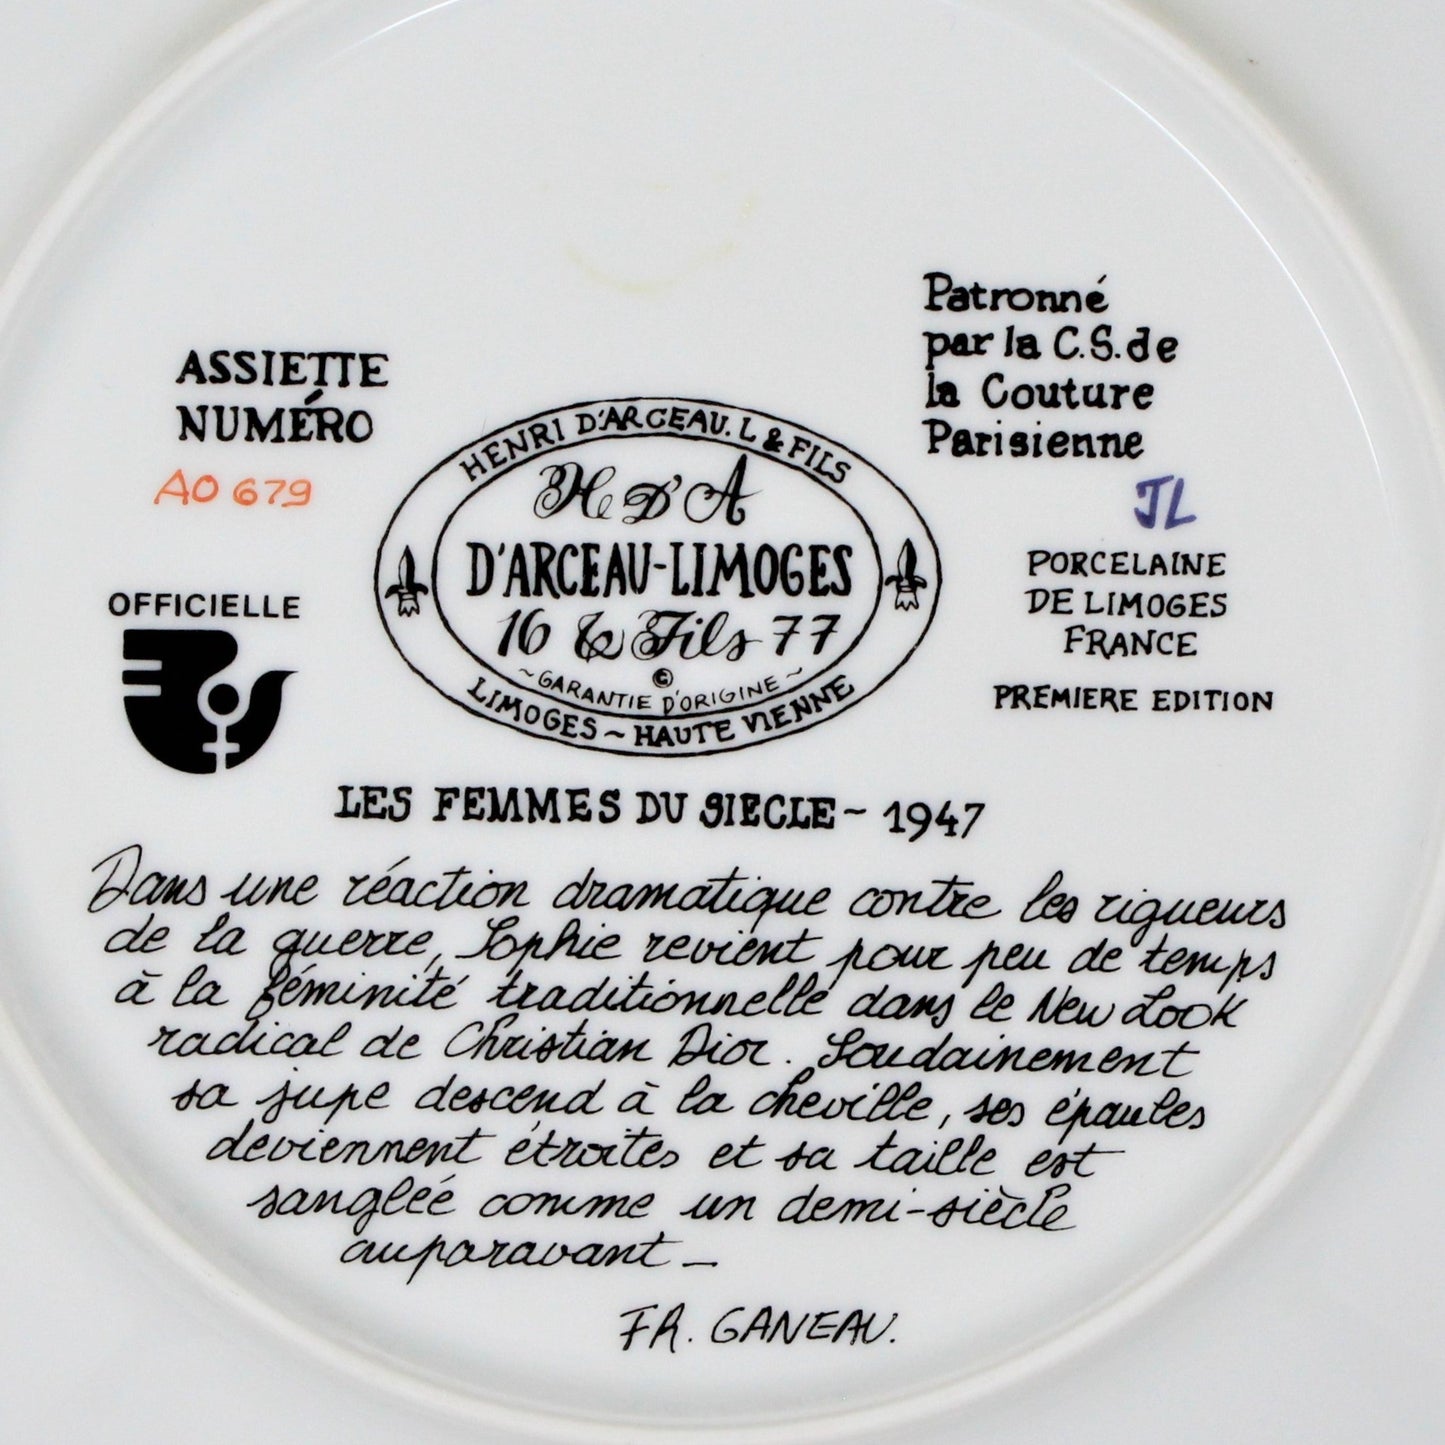 Decorative Plate, D'Arceau Limoges, F Ganeau Les Femmes du Siecle - Women of The Century, Sophie La Feminite Retrouvee, Vintage 1978